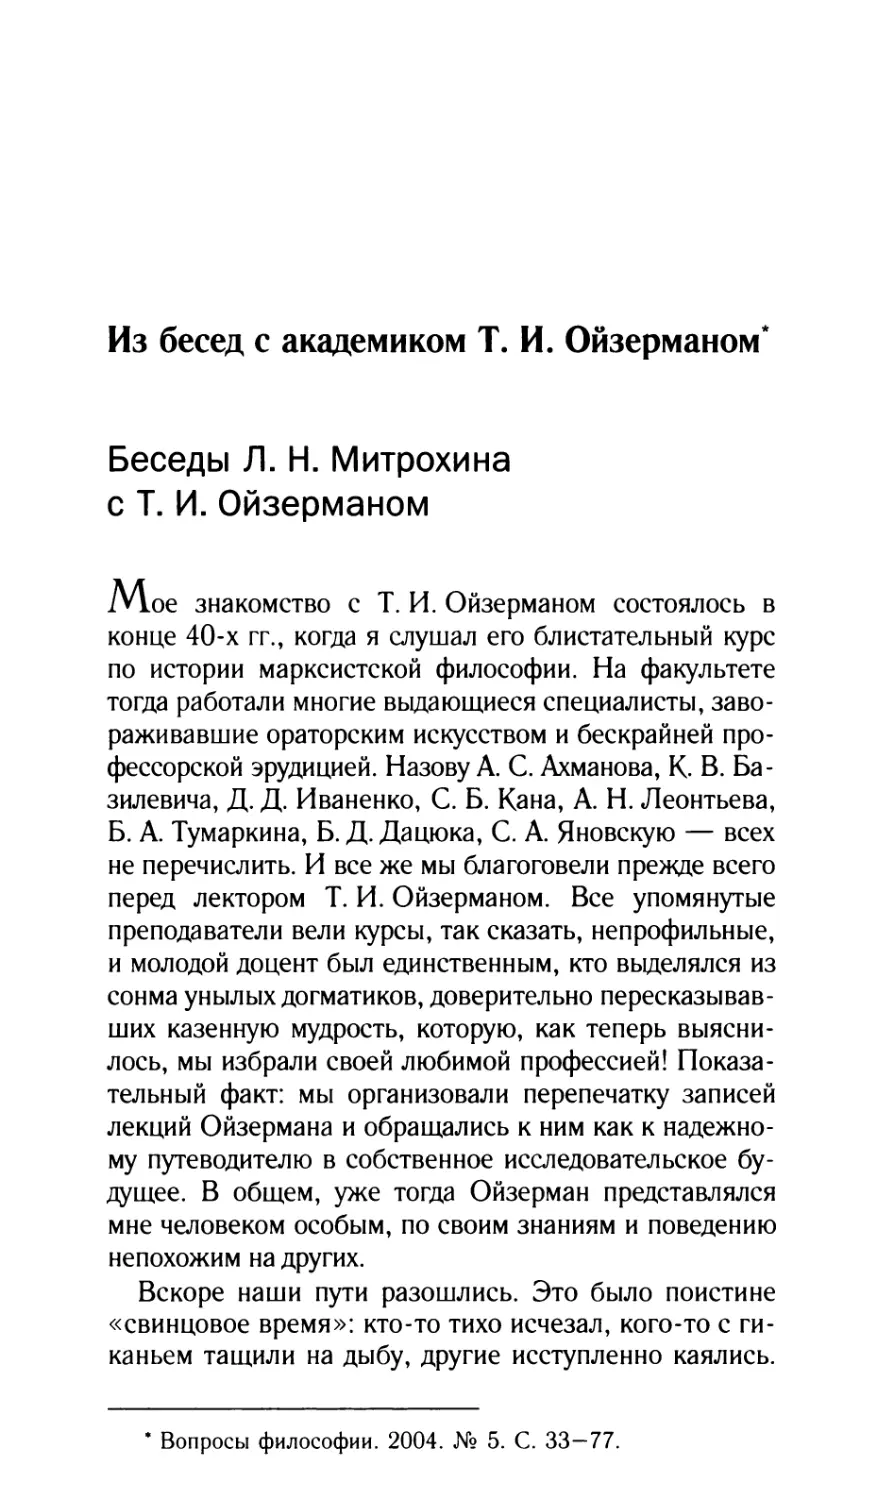 Беседы Л.Н. Митрохина с Т.И. Ойзерманом